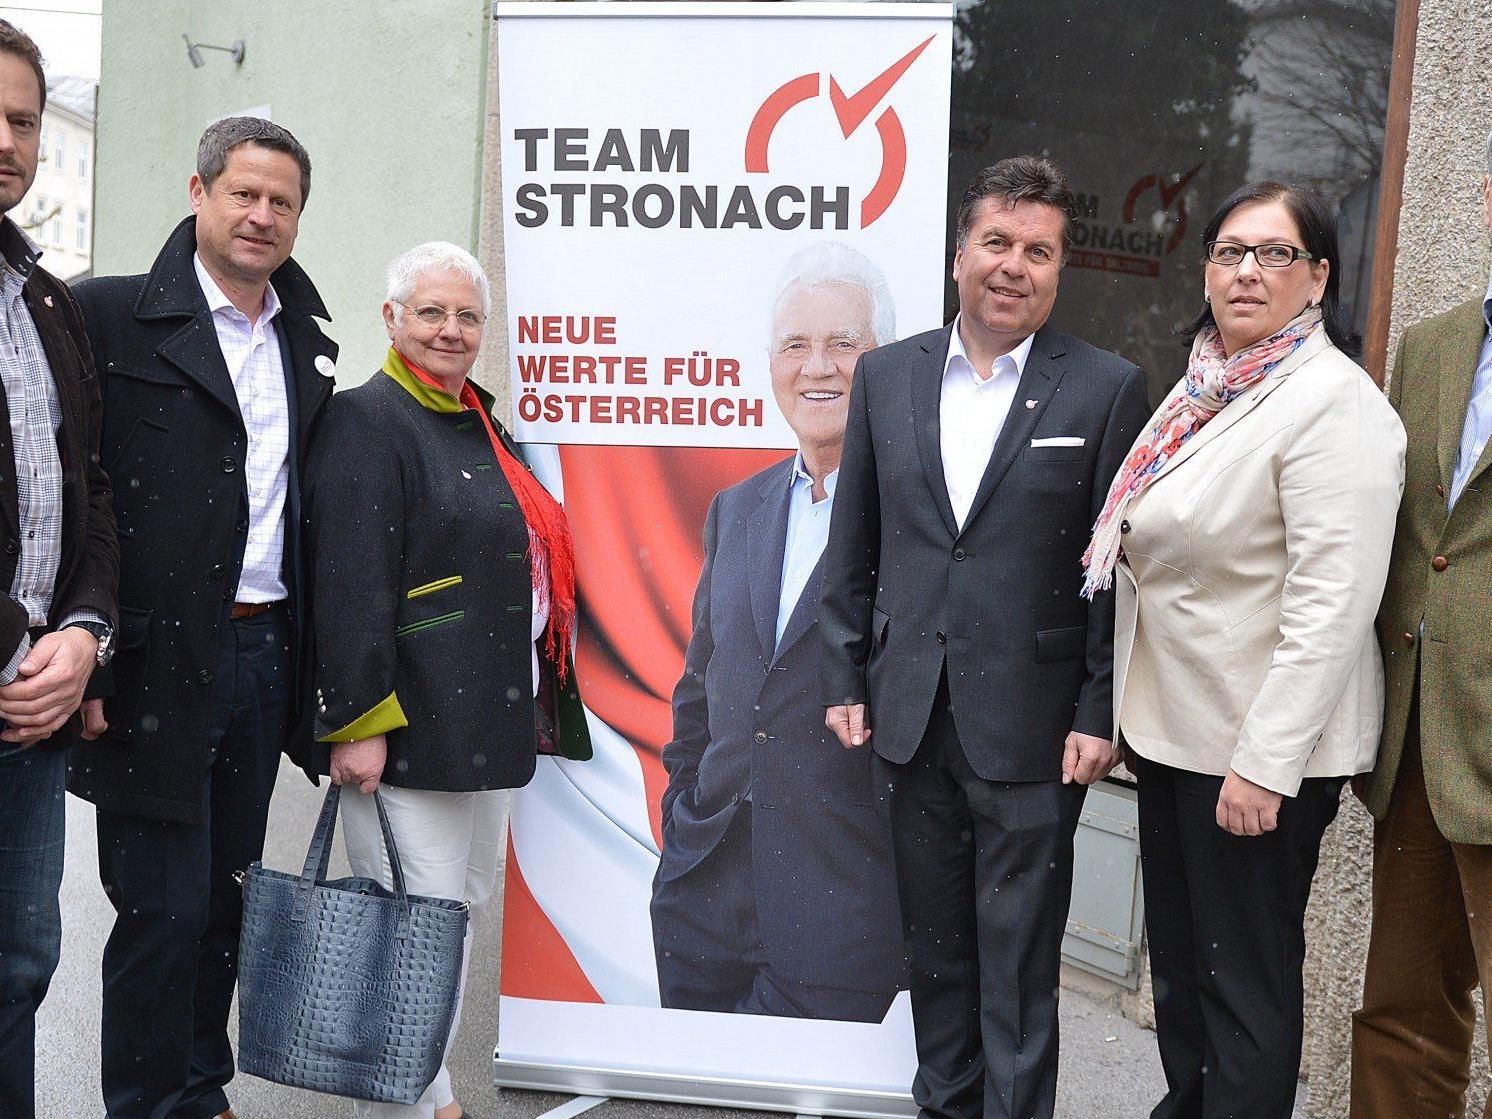 Das Team Stronach hat große Ziele bei der Landtagswahl in Salzburg.